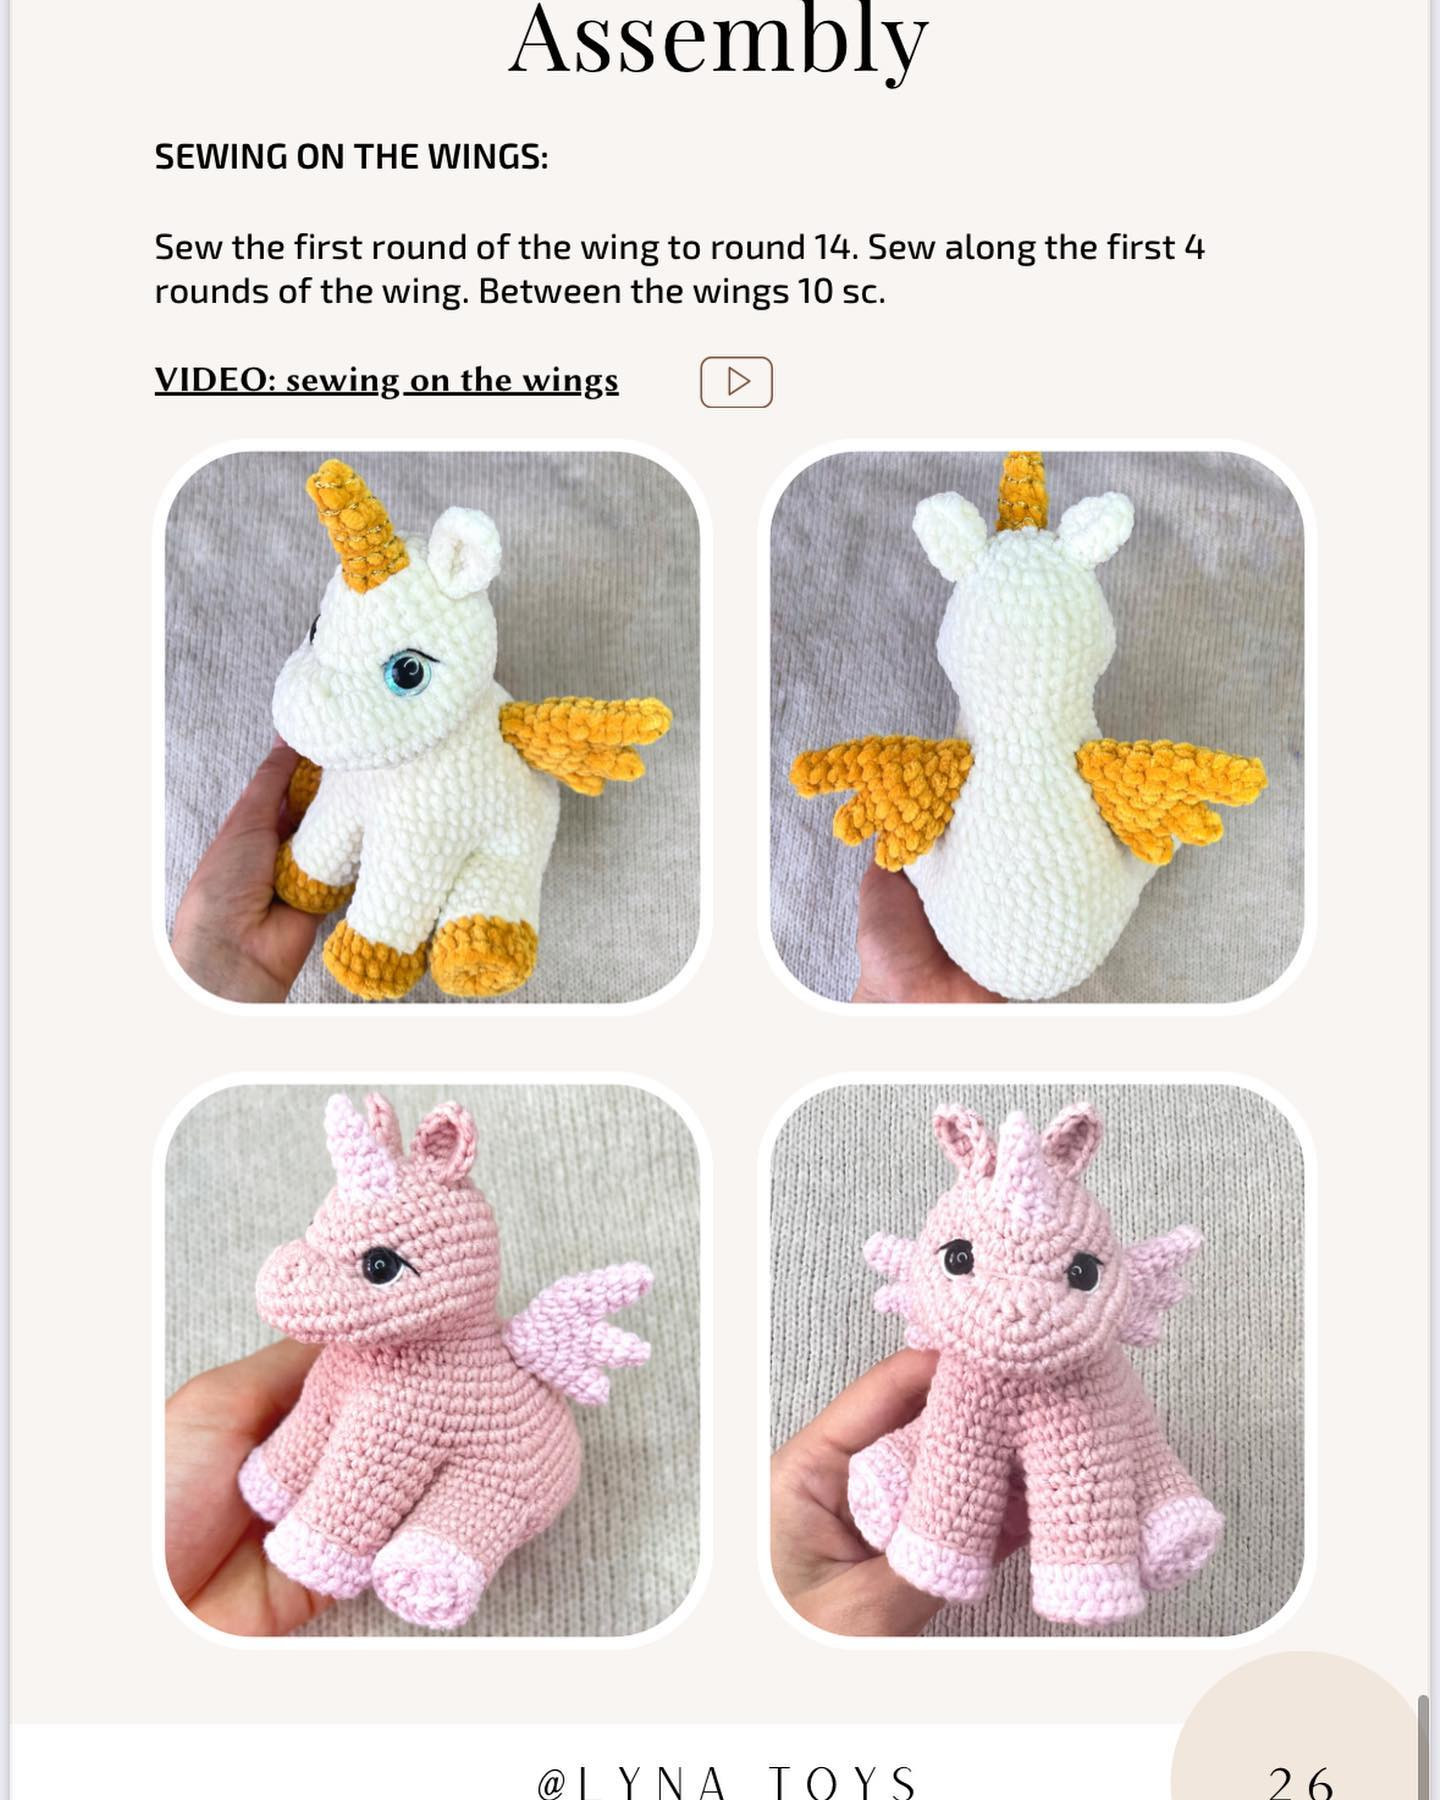 crochet pattern unicorn